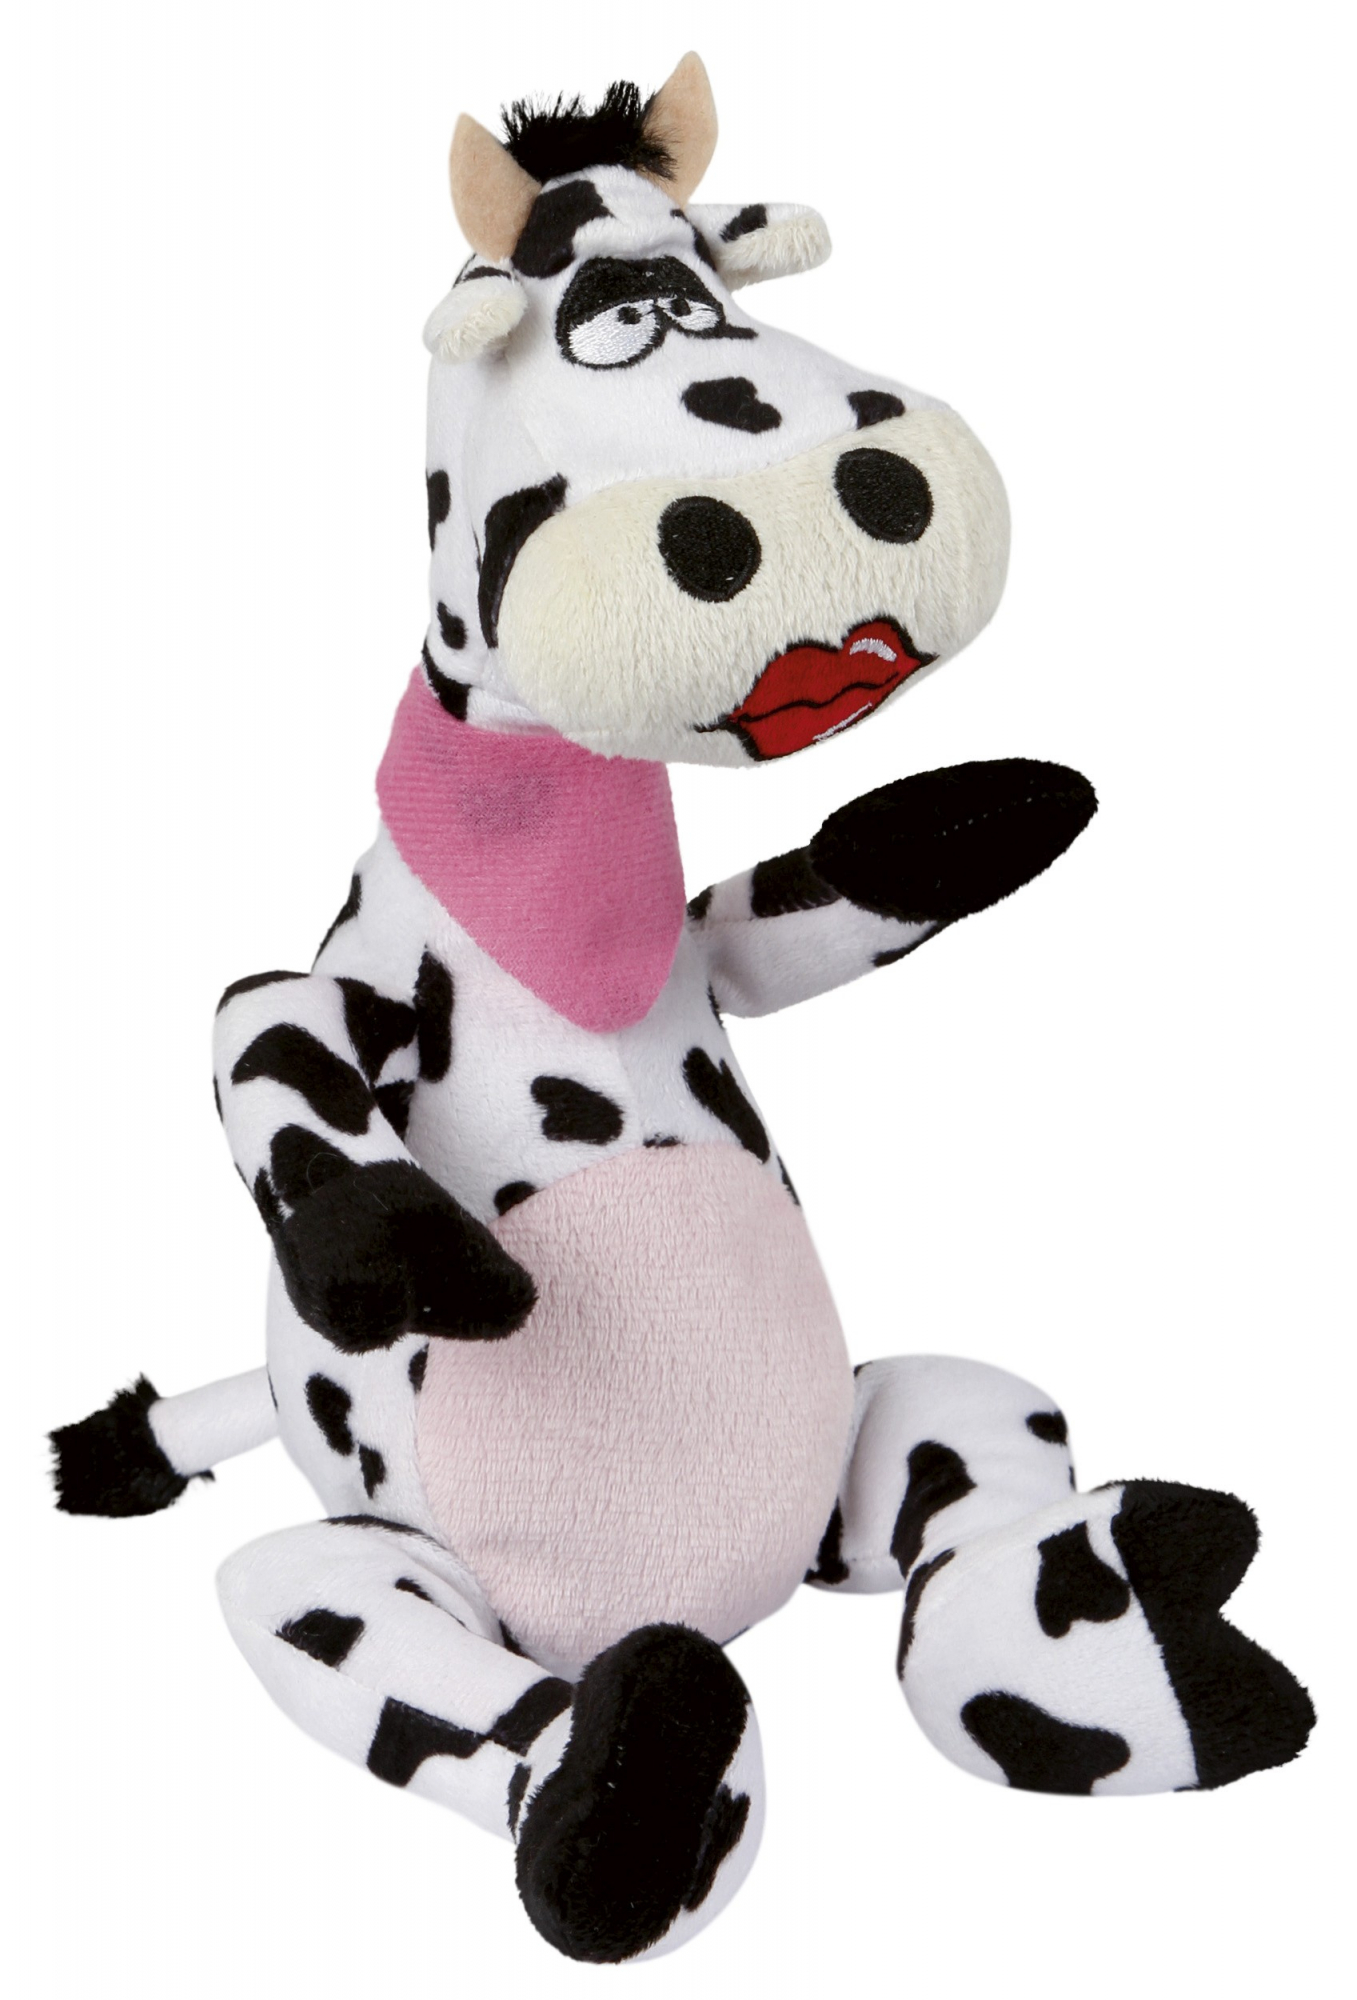 Brinquedo vaca Olga 20 cm